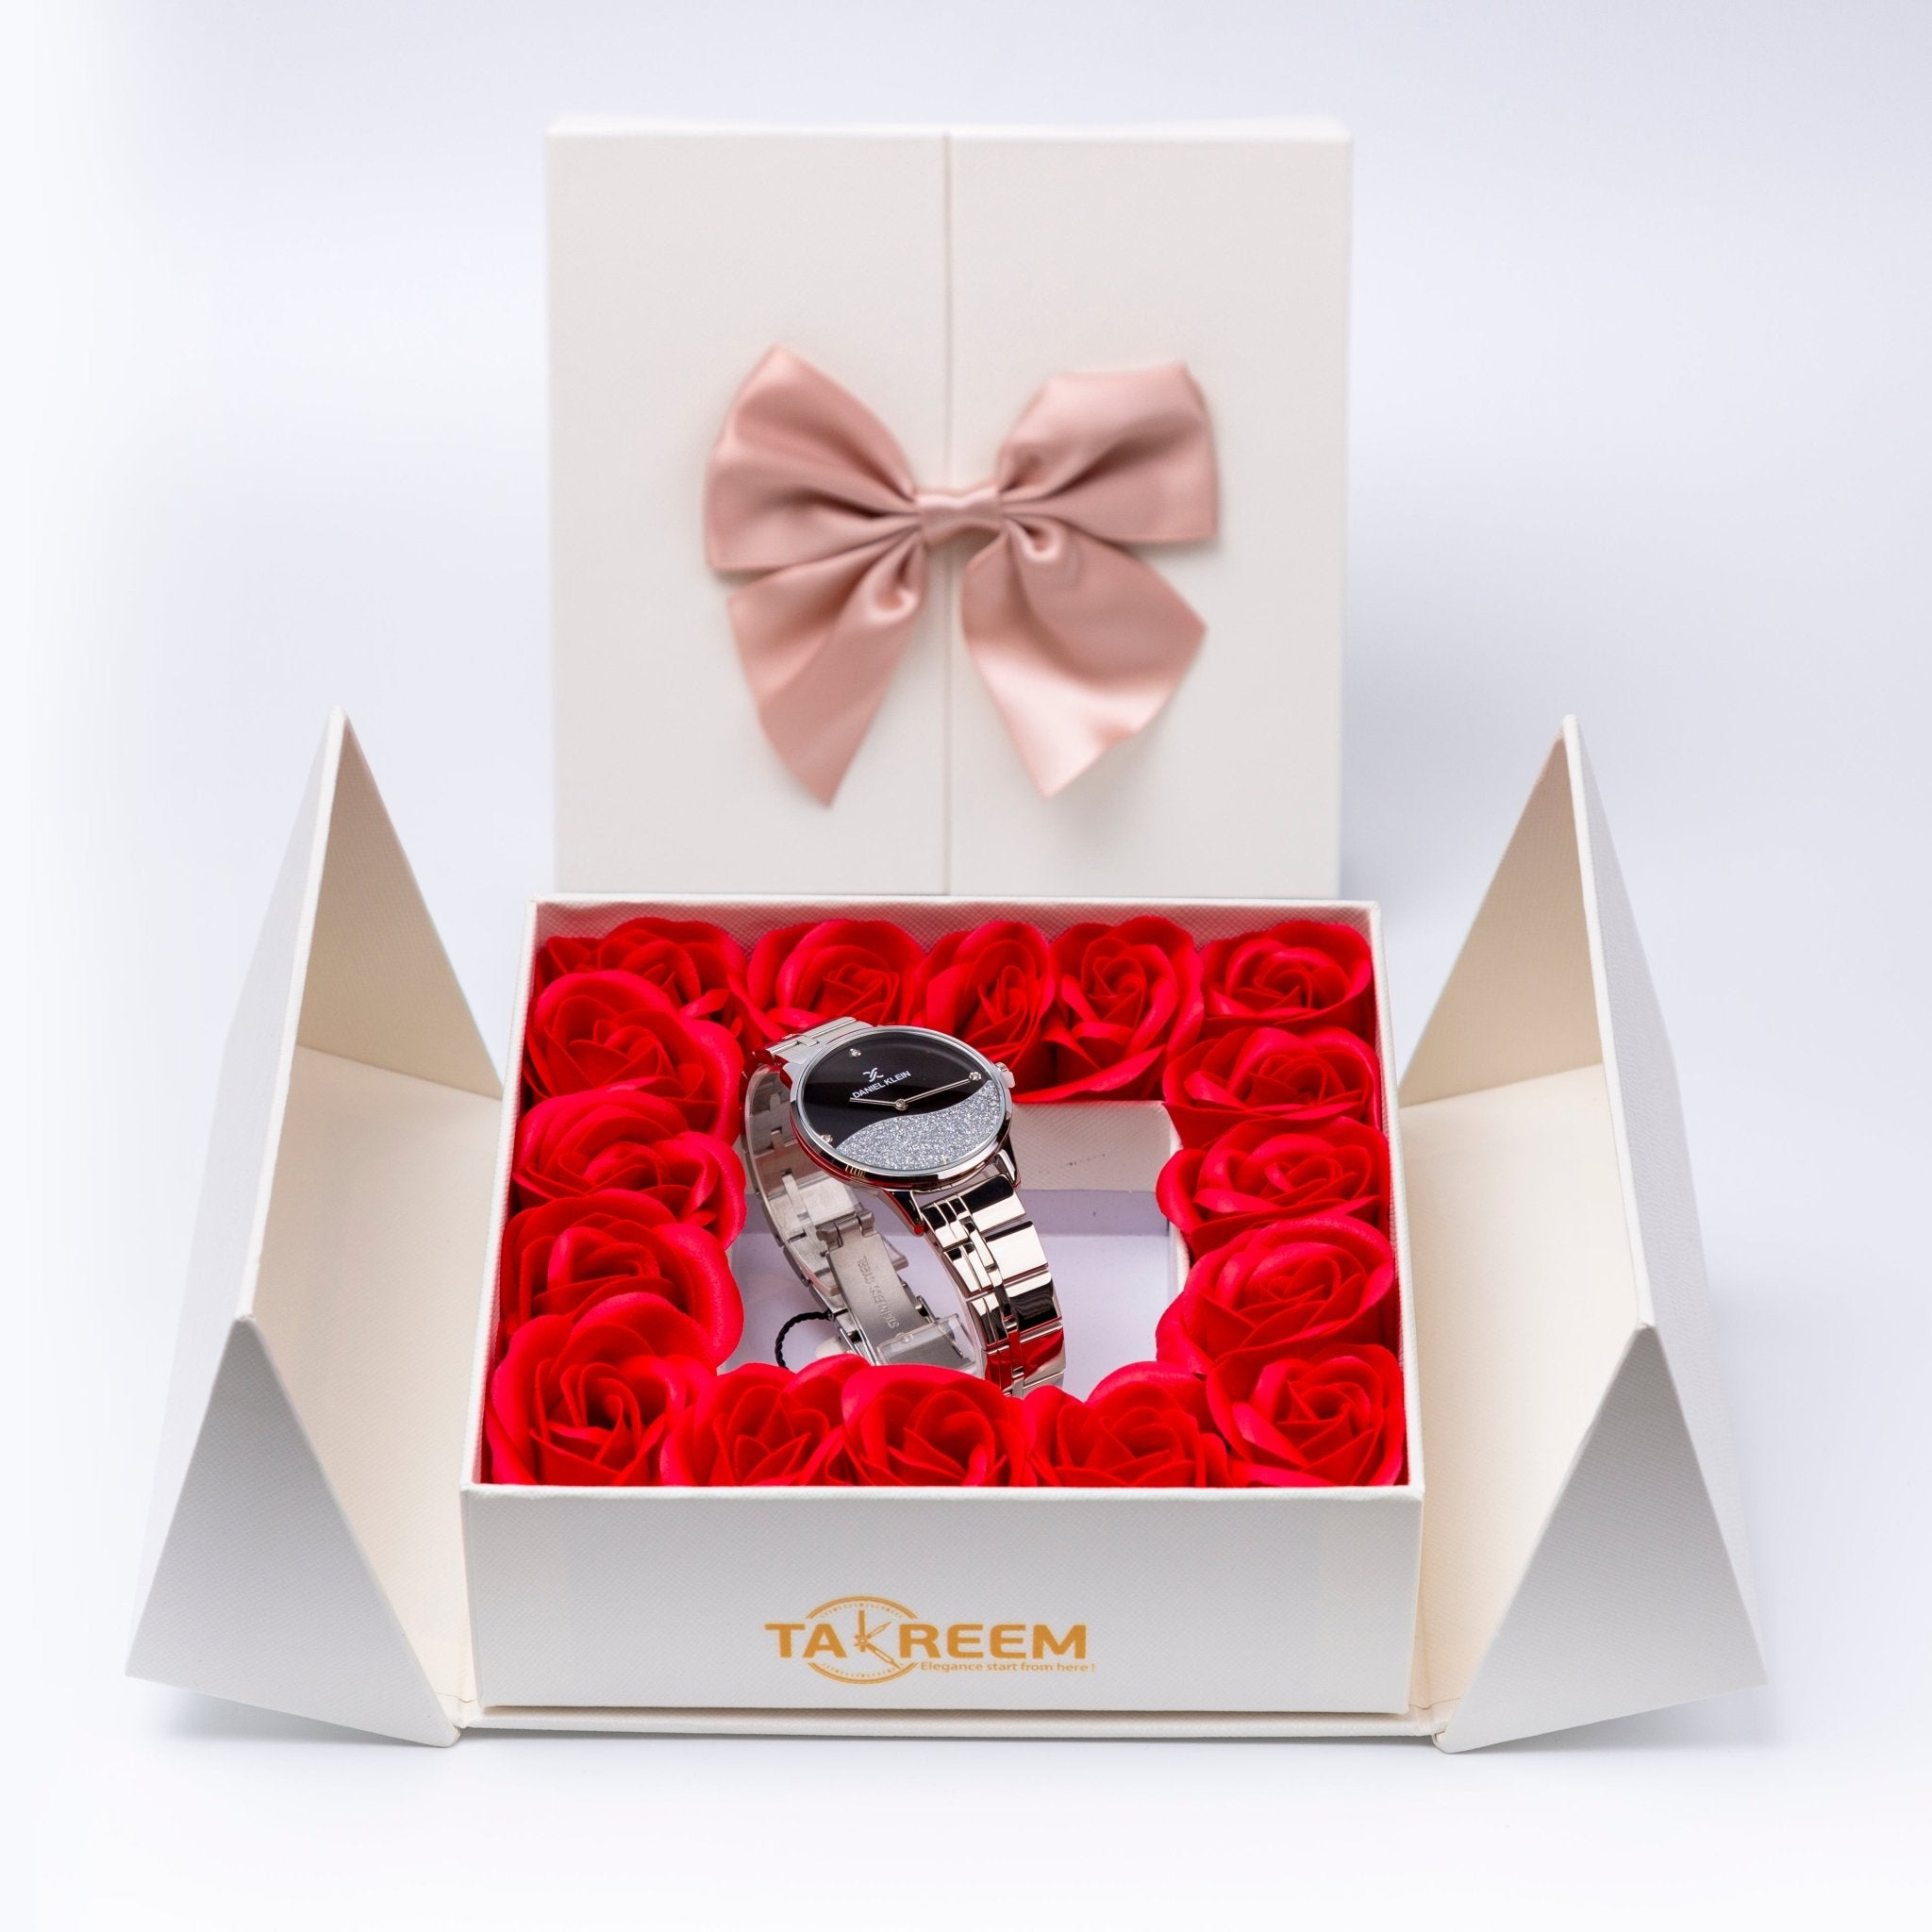 Flower Box - Gift For Women 2 - #shoFlower Box - Gift For Women 2p_name#Flower Box - Gift For Women 2Gift Boxes & TinsTakreemTakreem.joWomenWatchFlower Box - Gift For Women 2 - Takreem.jo